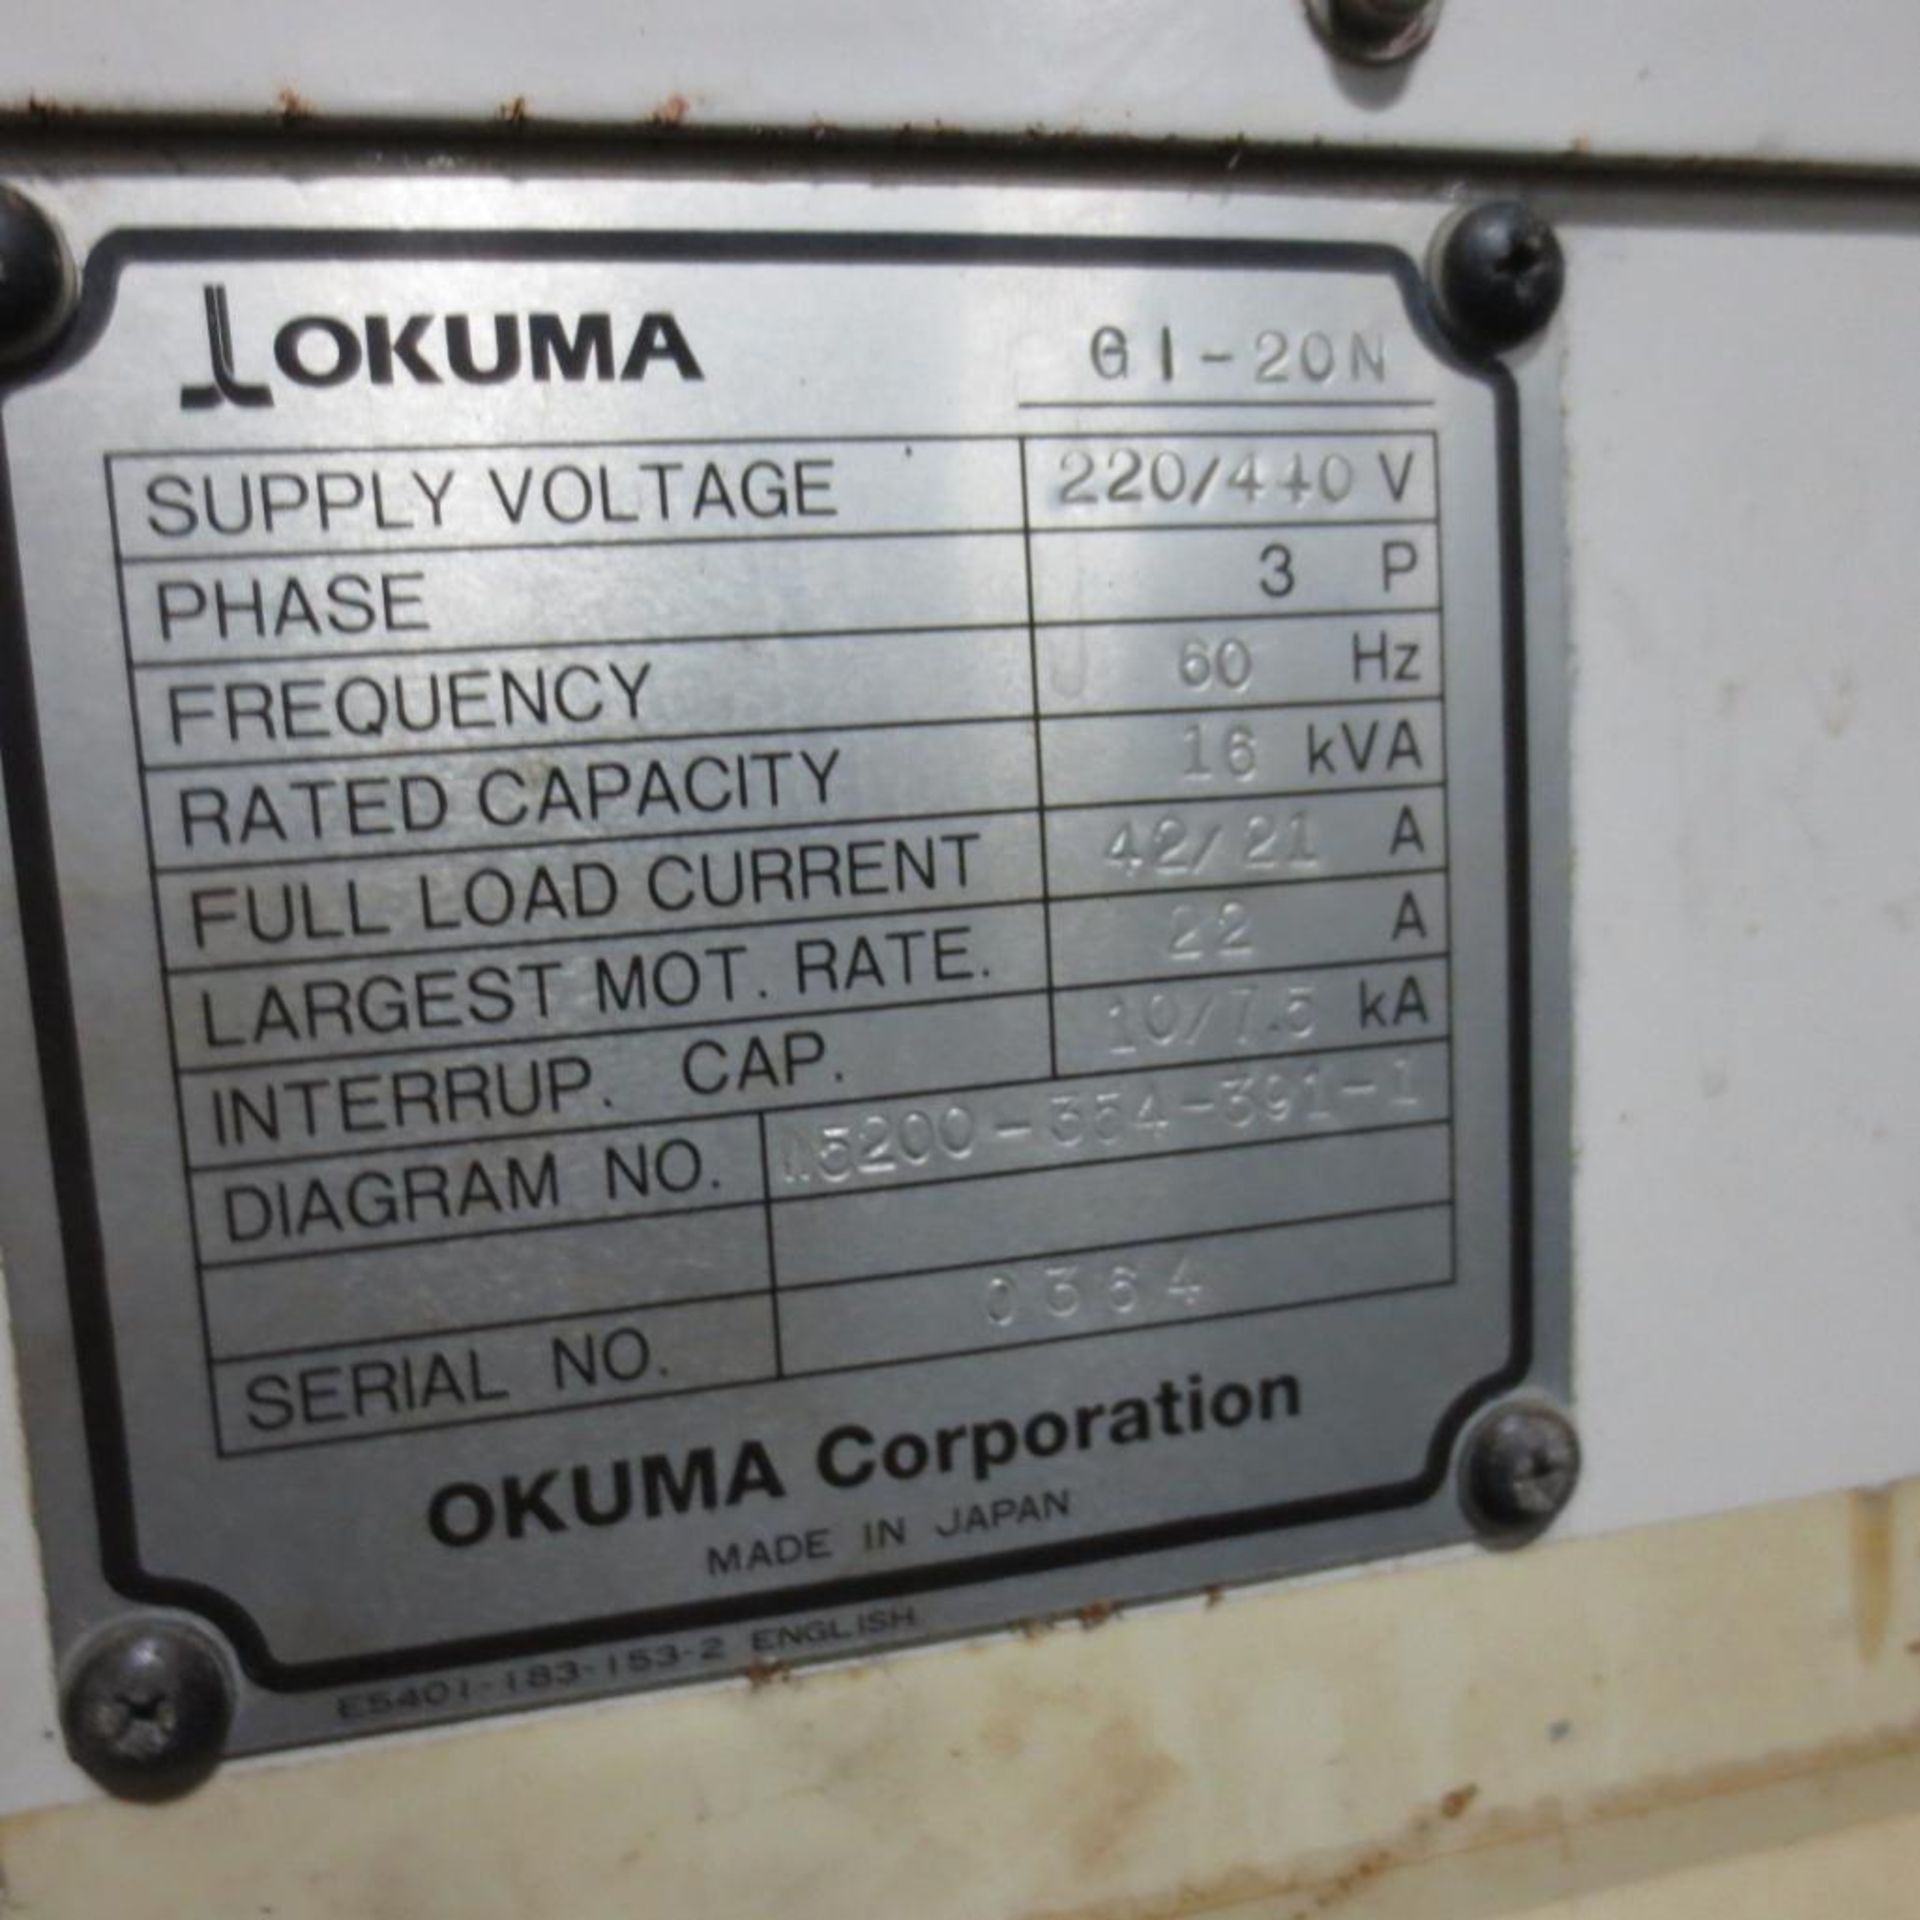 Okuma G1-20N CNC Turning Center, S/N 07040364. Loading Fee is $550.00 - Image 7 of 7